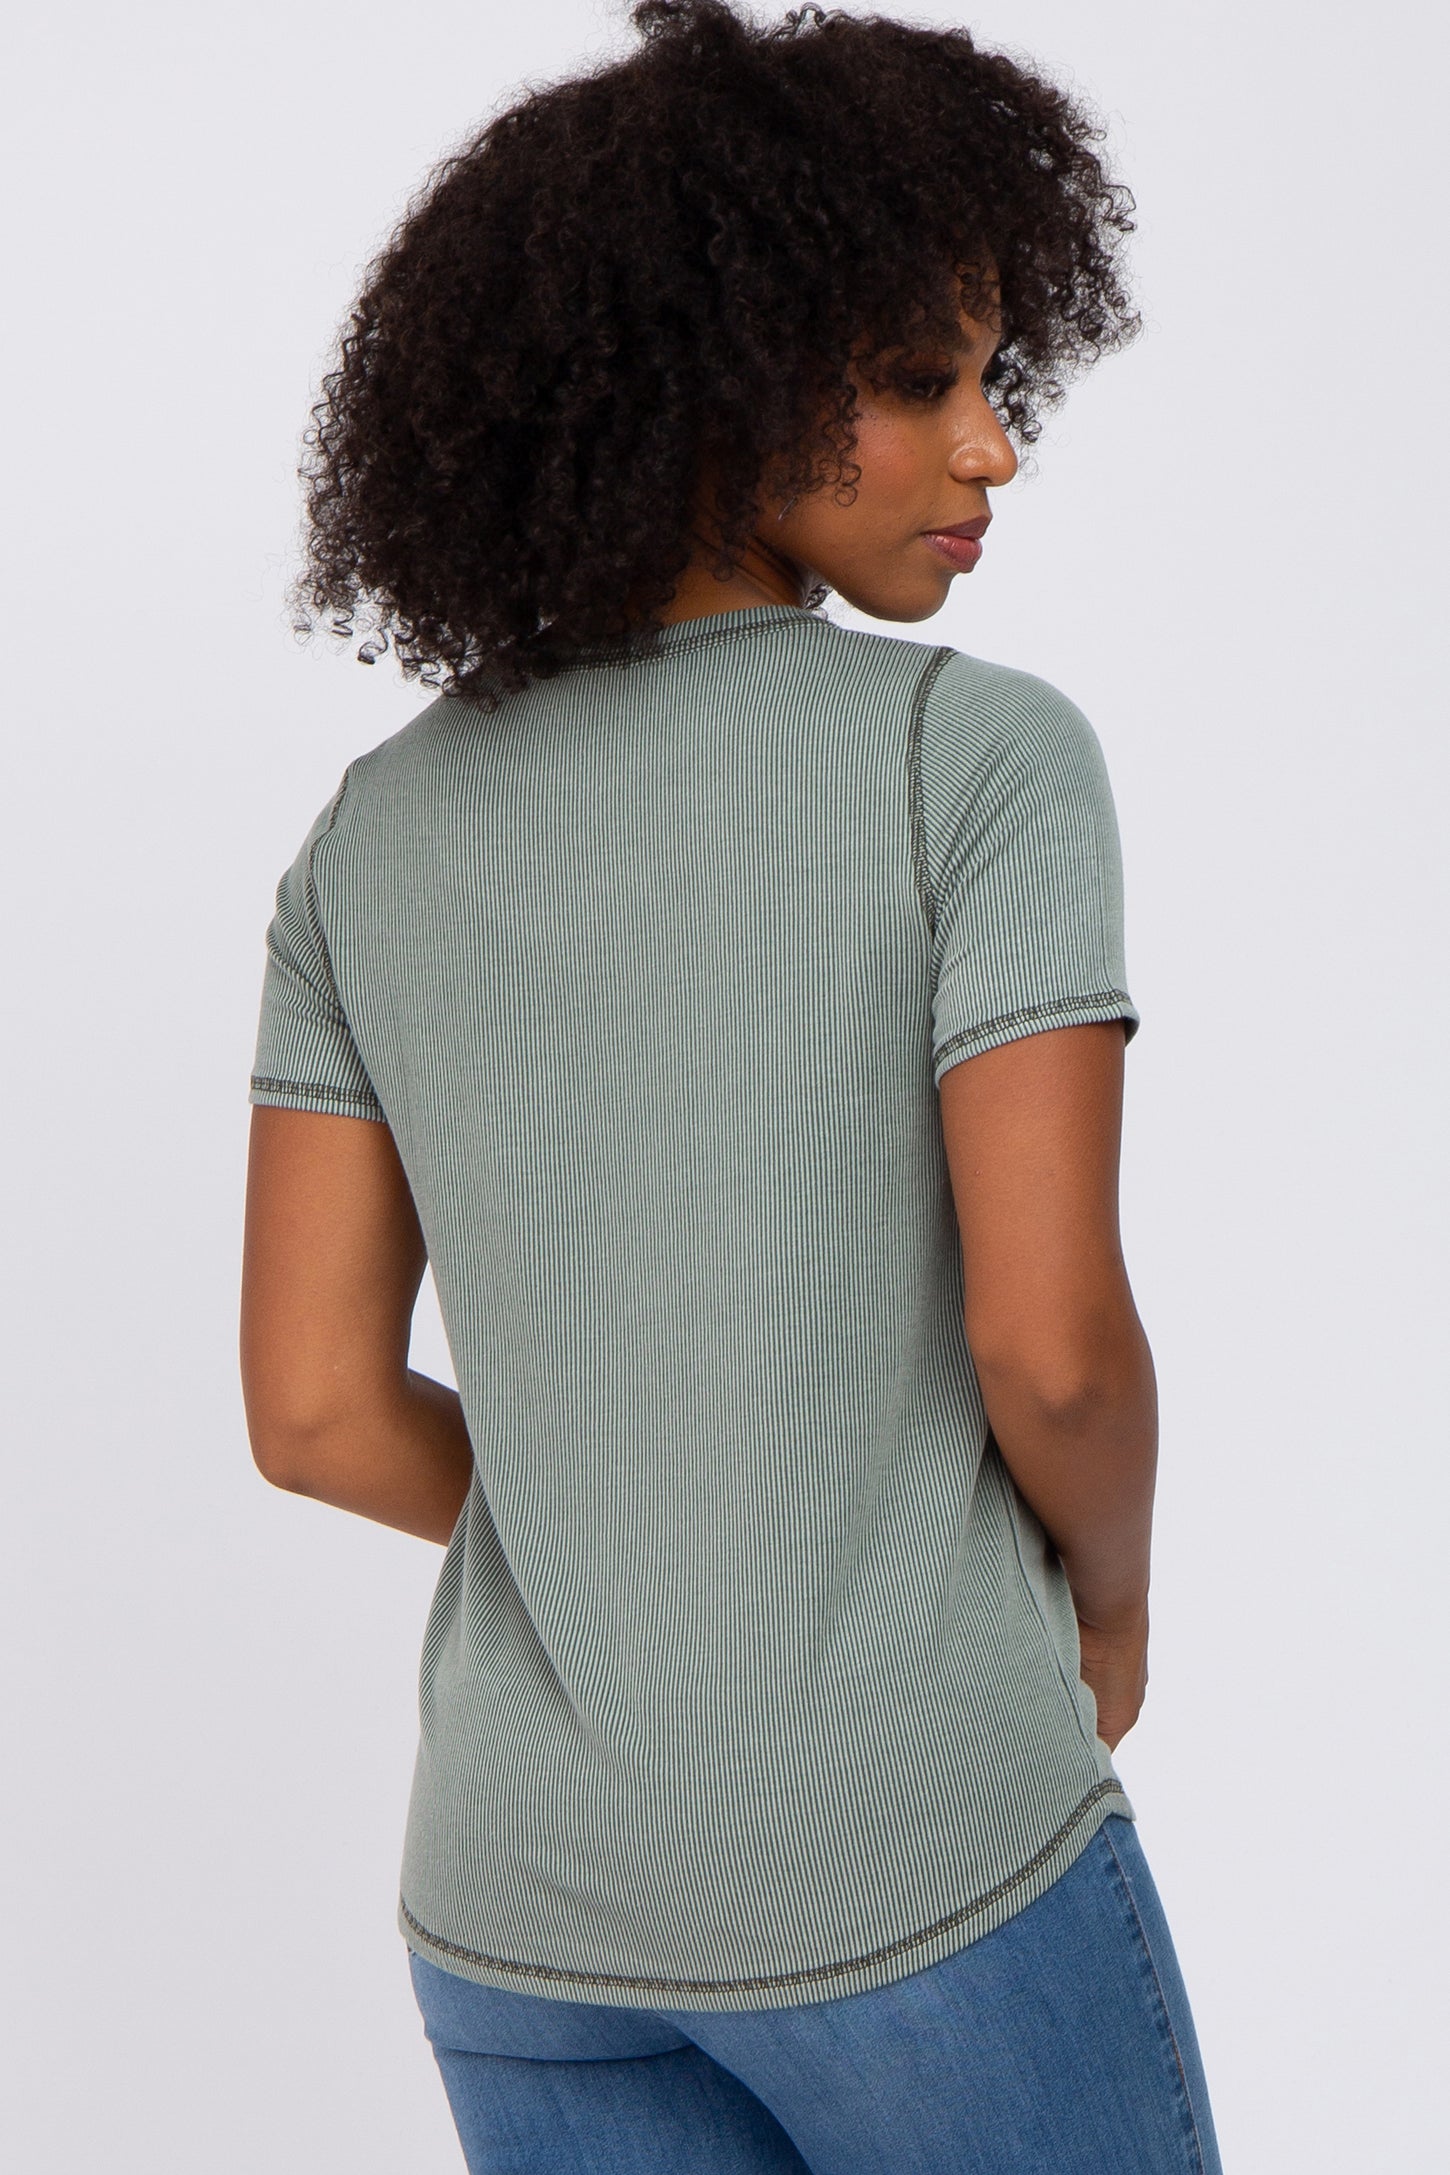 Olive Ribbed Front Pocket Short Sleeve Top